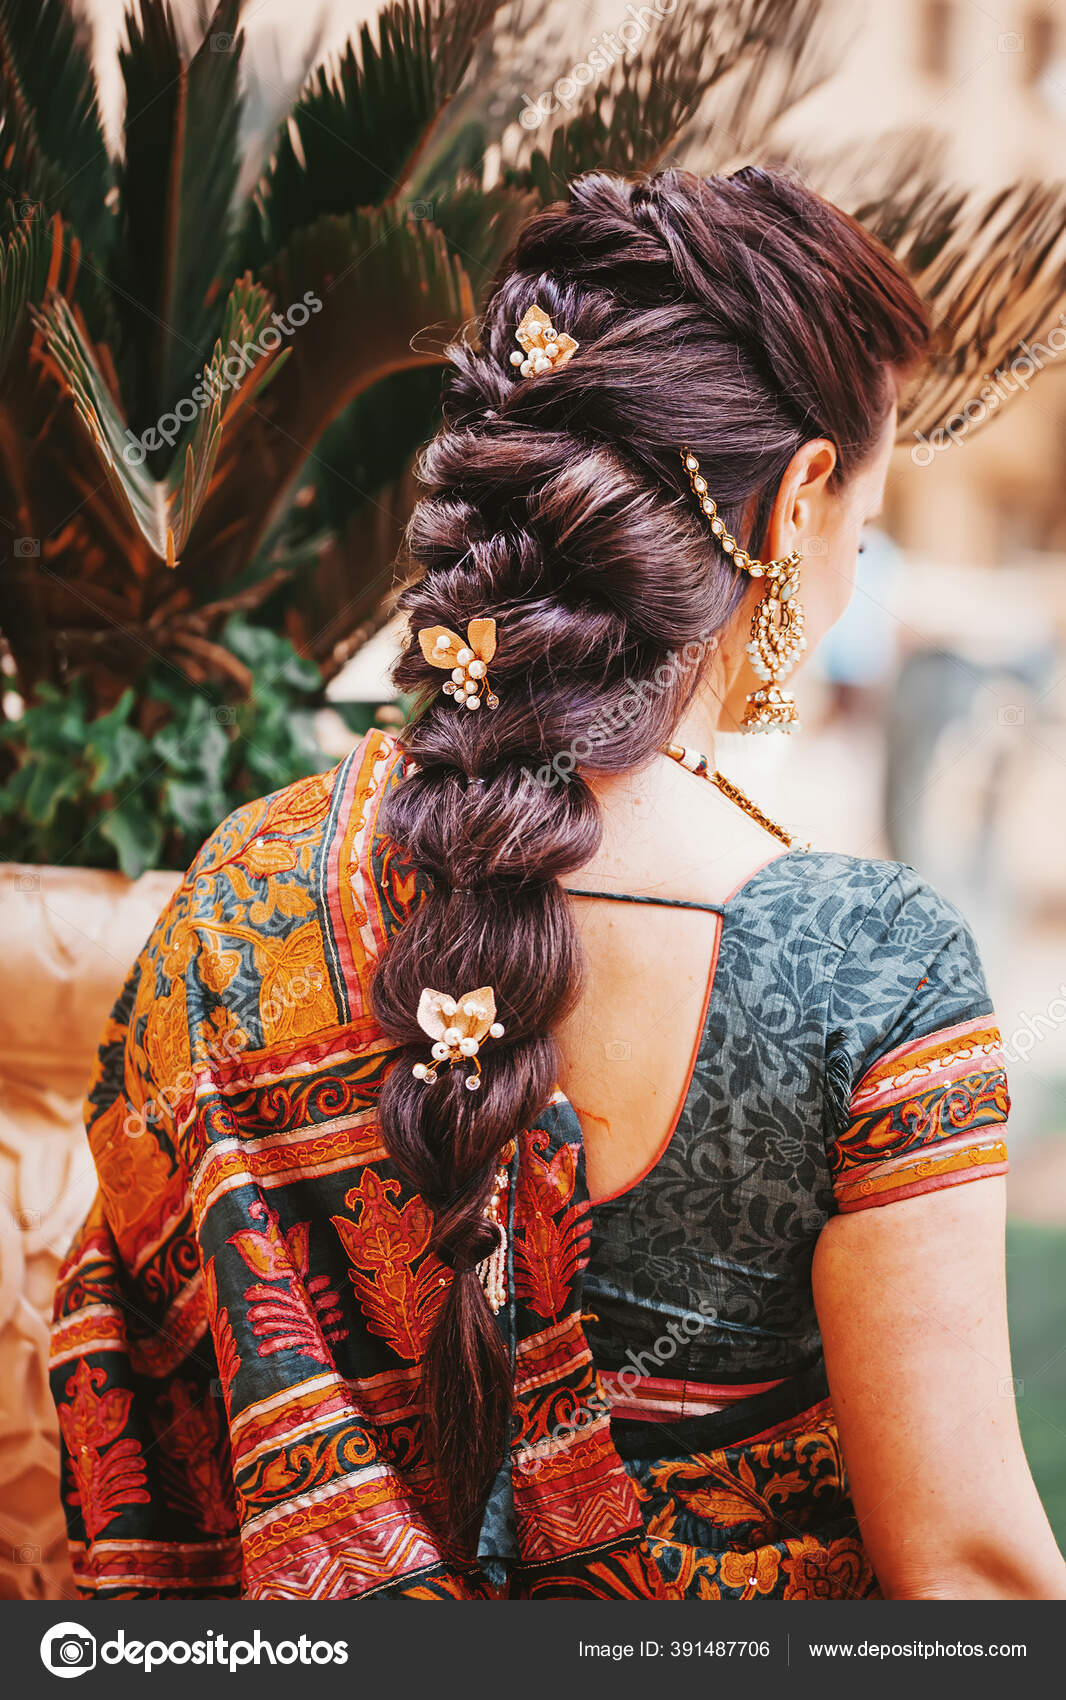 170 Indian braided hair  ideas  braids for long hair long hair styles  indian long hair braid